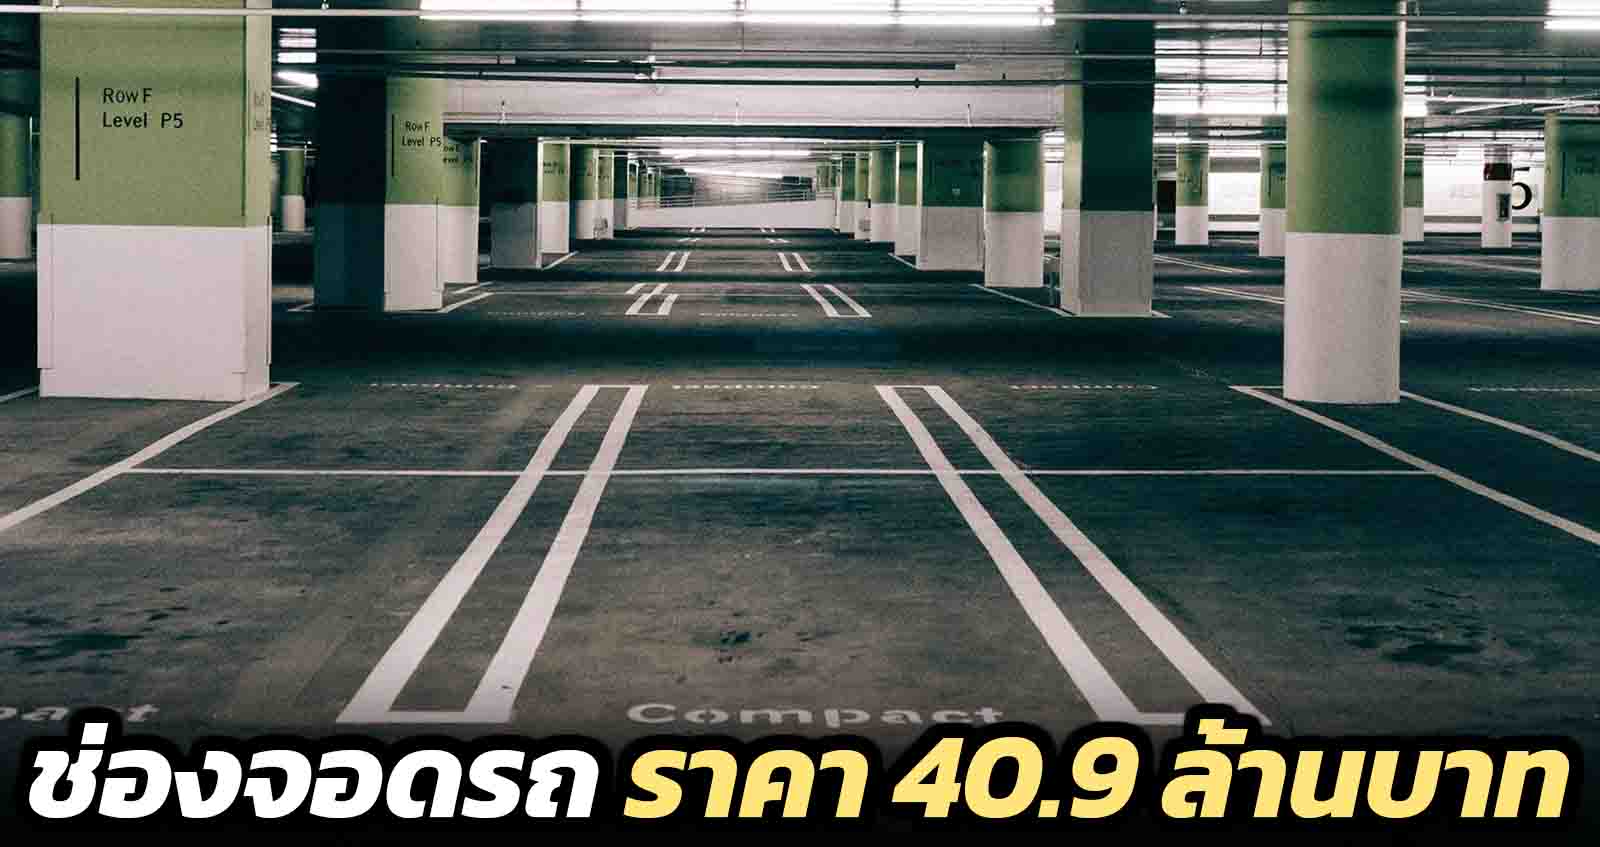 ช่องจอดรถแพงสุดในโลก 1 ช่อง ราคา 40.9 ล้านบาท ในฮ่องกง